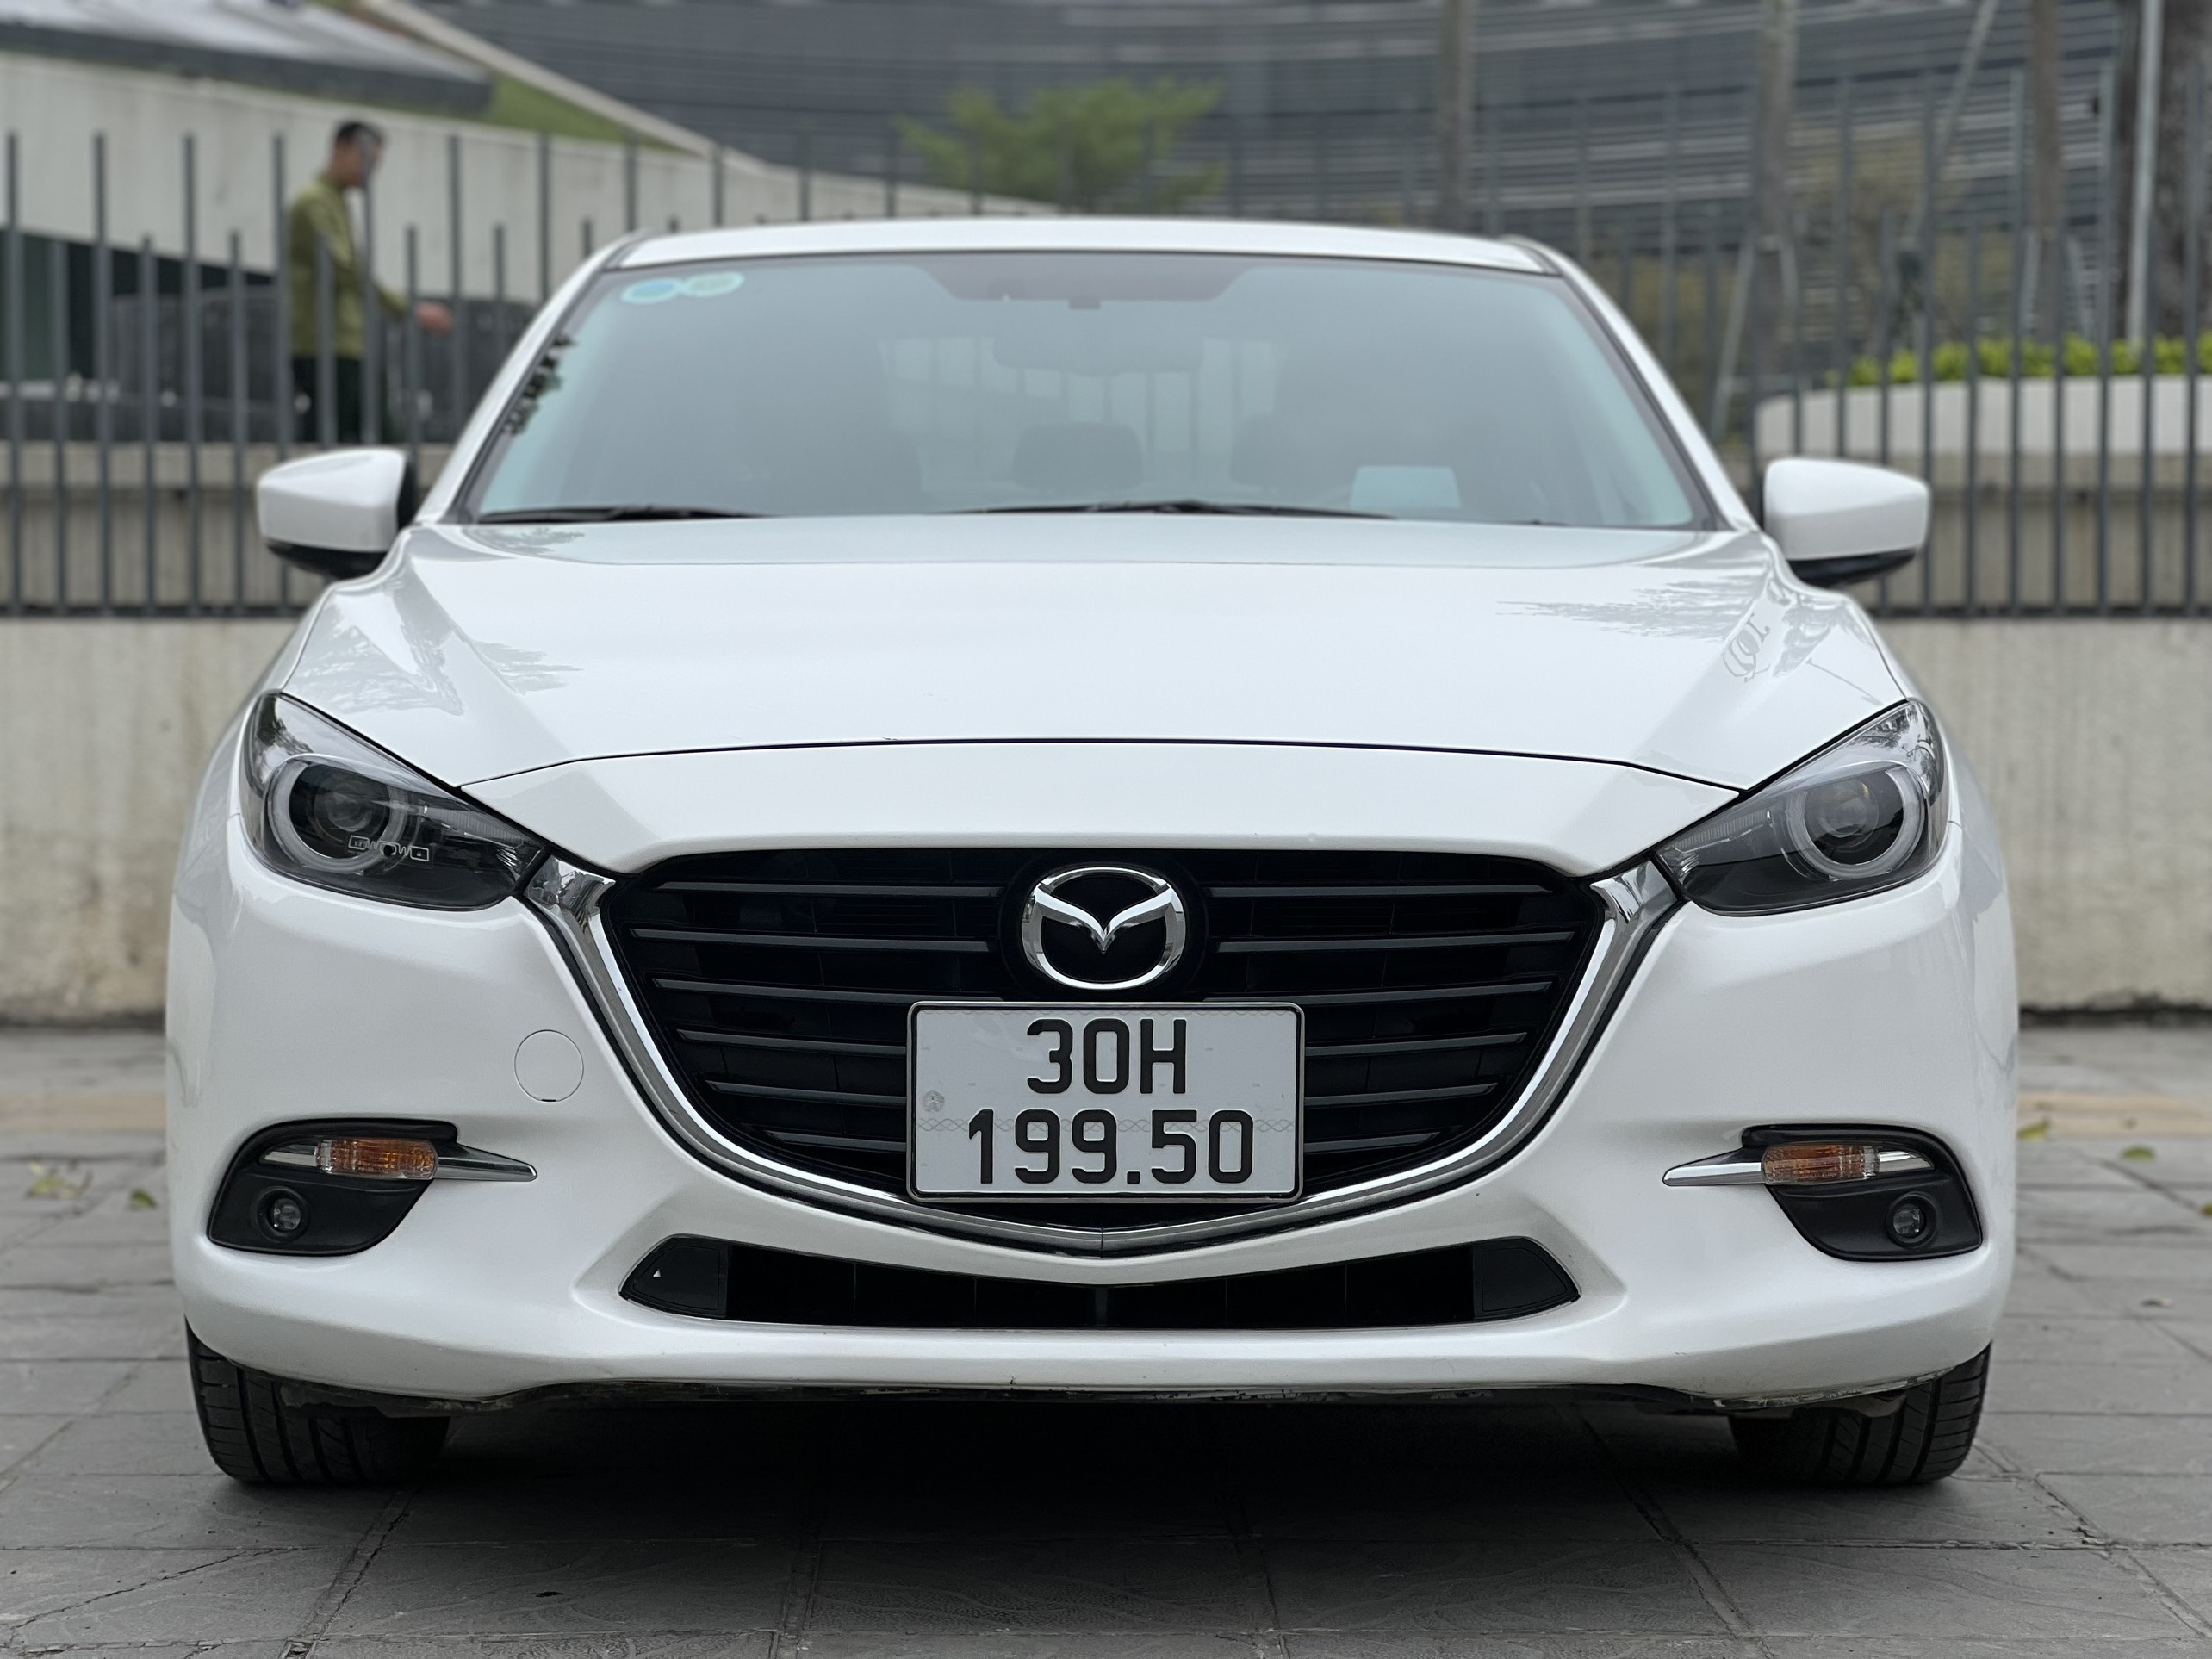 2018 Mazda3 Sport Black Priced From 21595 In The UK  Carscoops